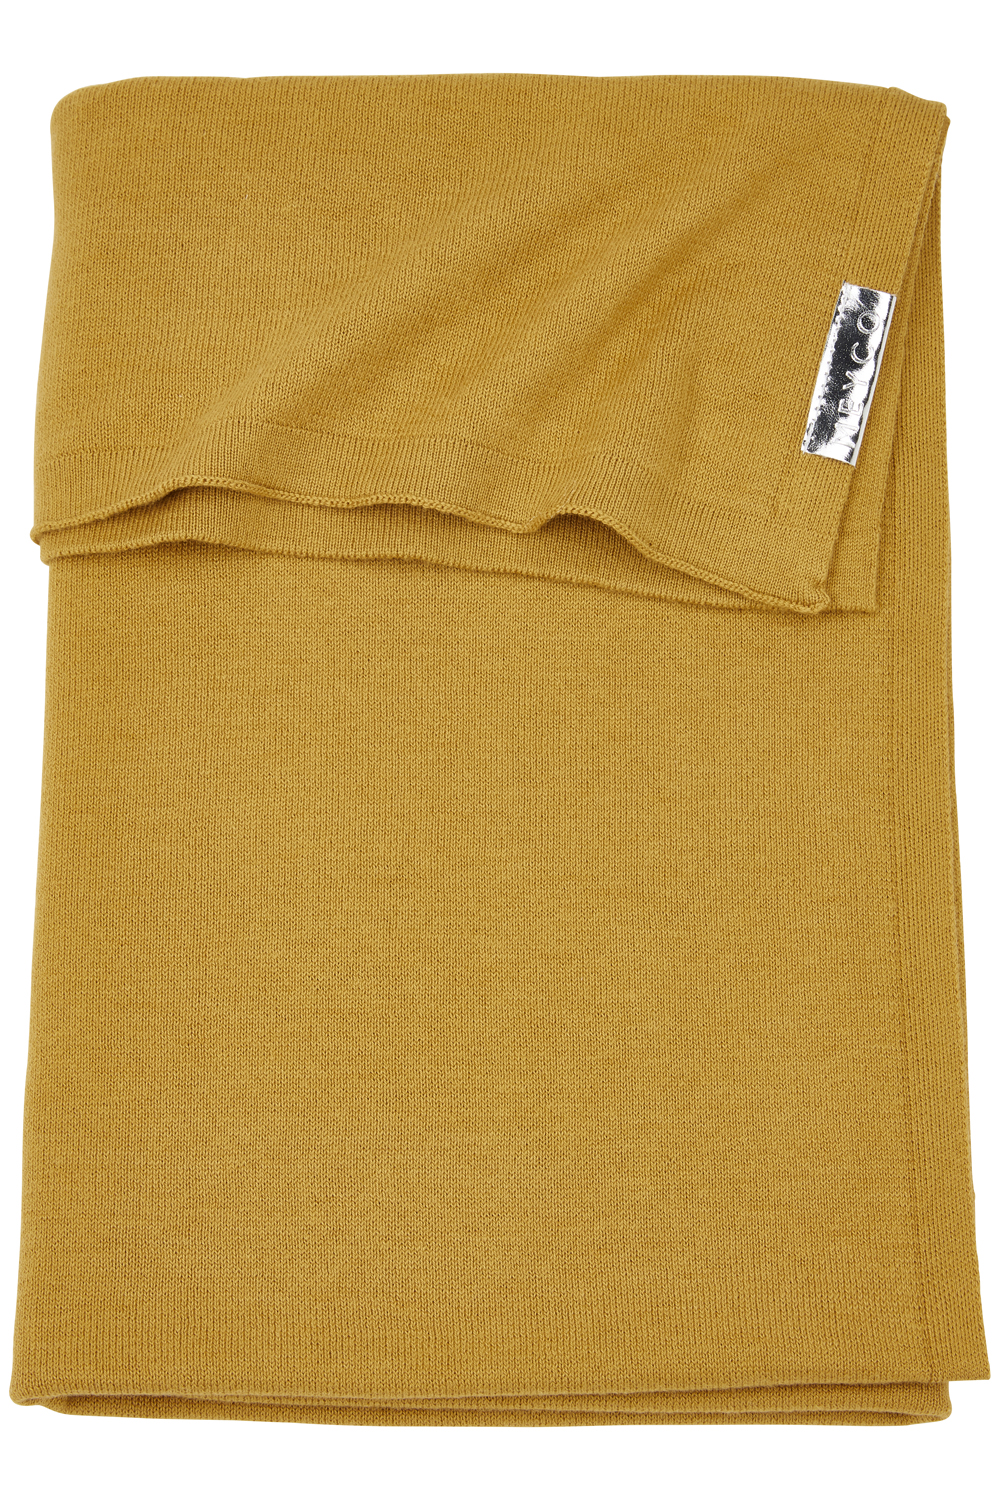 Cot Bed Blanket Knit Basic - Honey Gold - 100X150cm